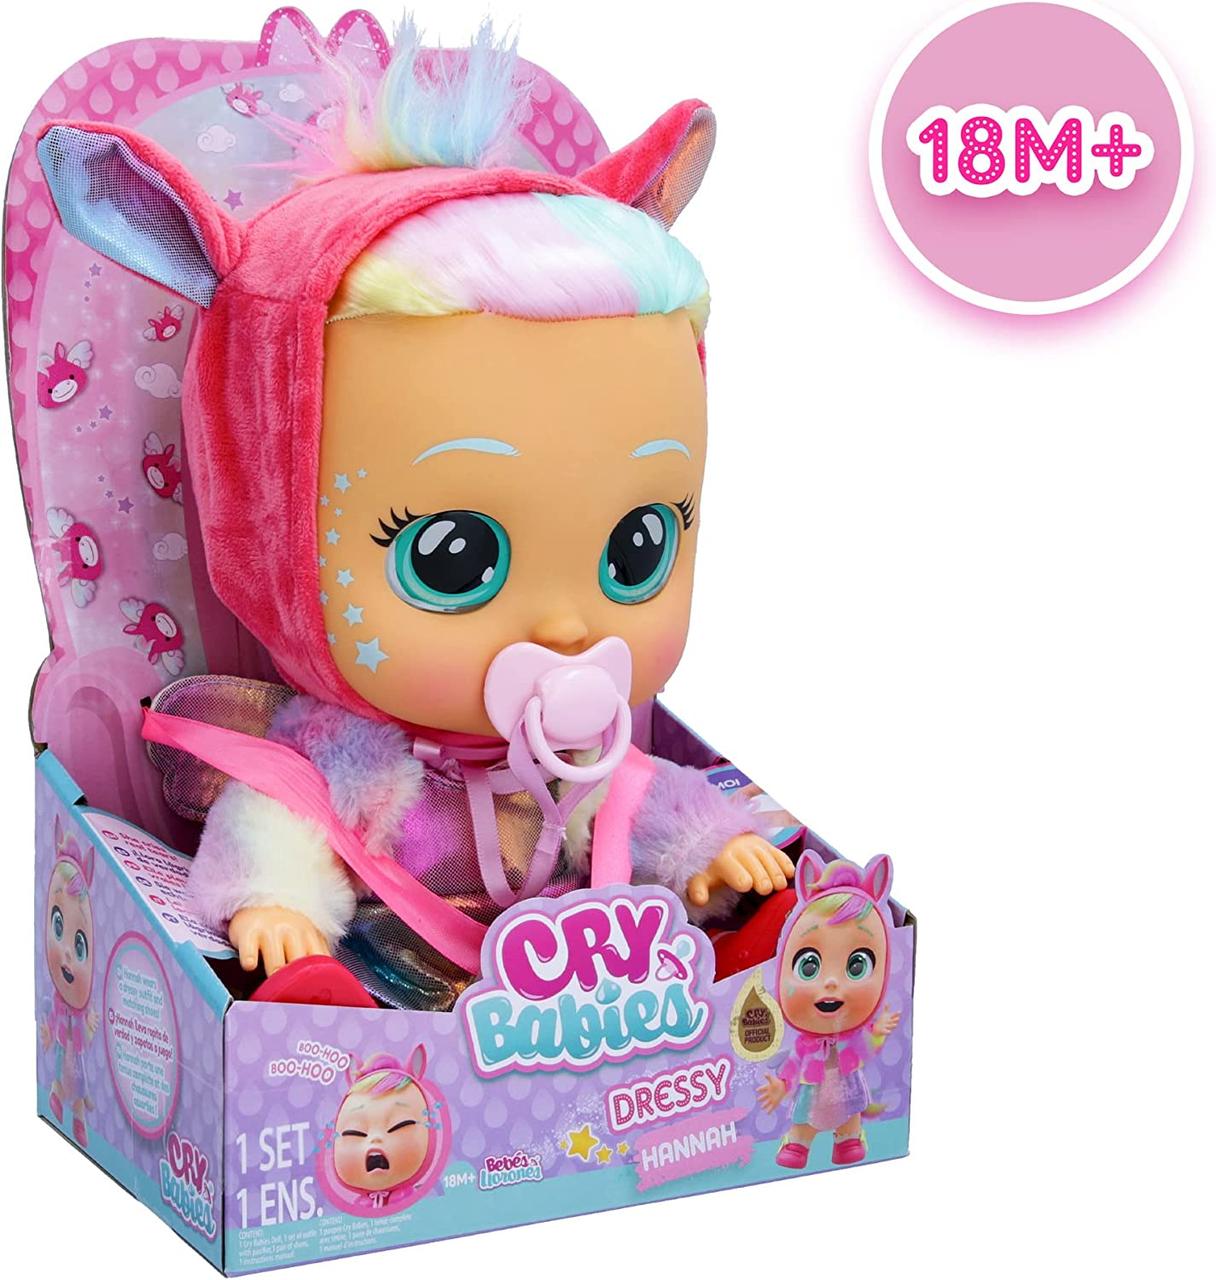 Інтерактивна лялька Плакса Cry Babies Dressy Fantasy Hannah Ханна 907430